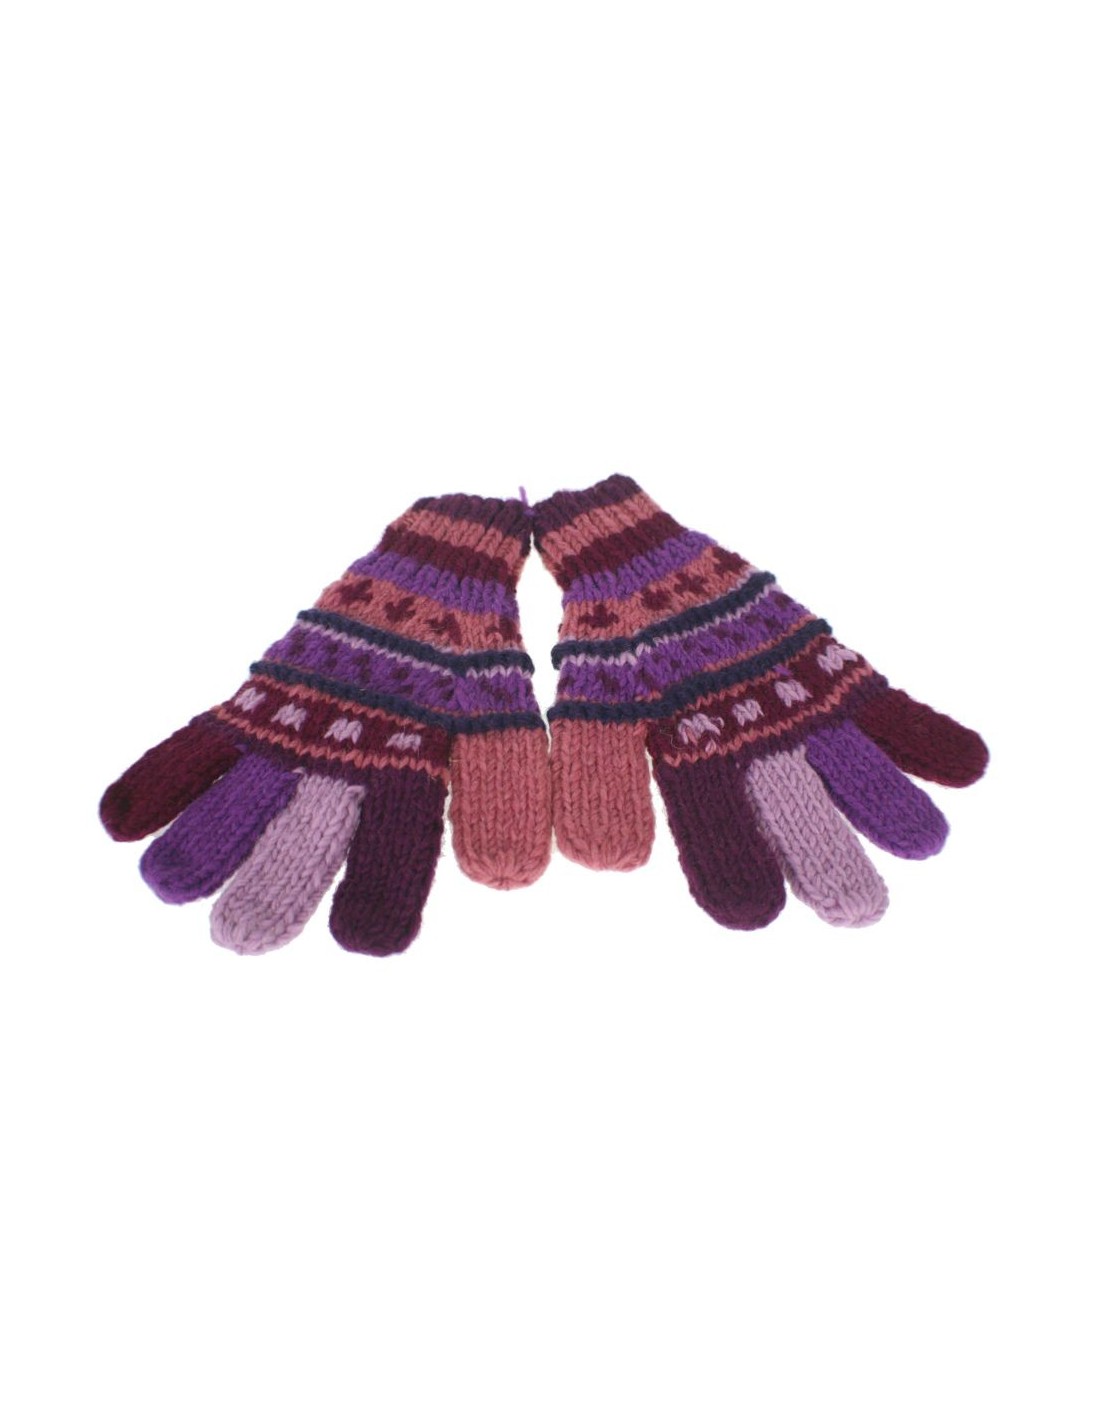 Guantes de lana color lila calientes suaves para invierno guantes unisex artesanal adulto regalo original de estilo hippie